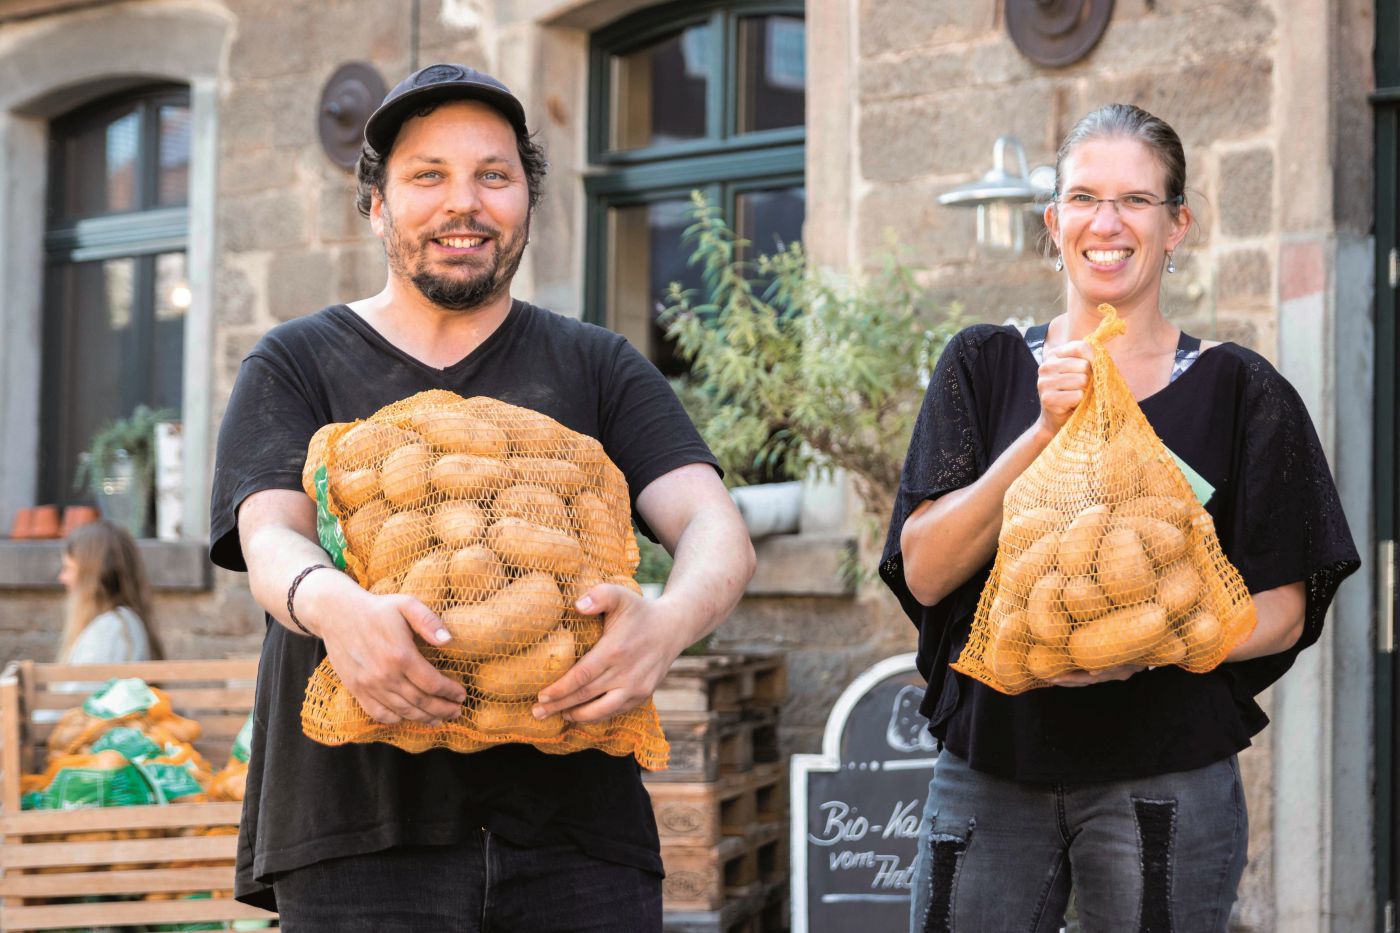 Mann und Frau halten jeweils einen Sack Kartoffeln in den Armen.